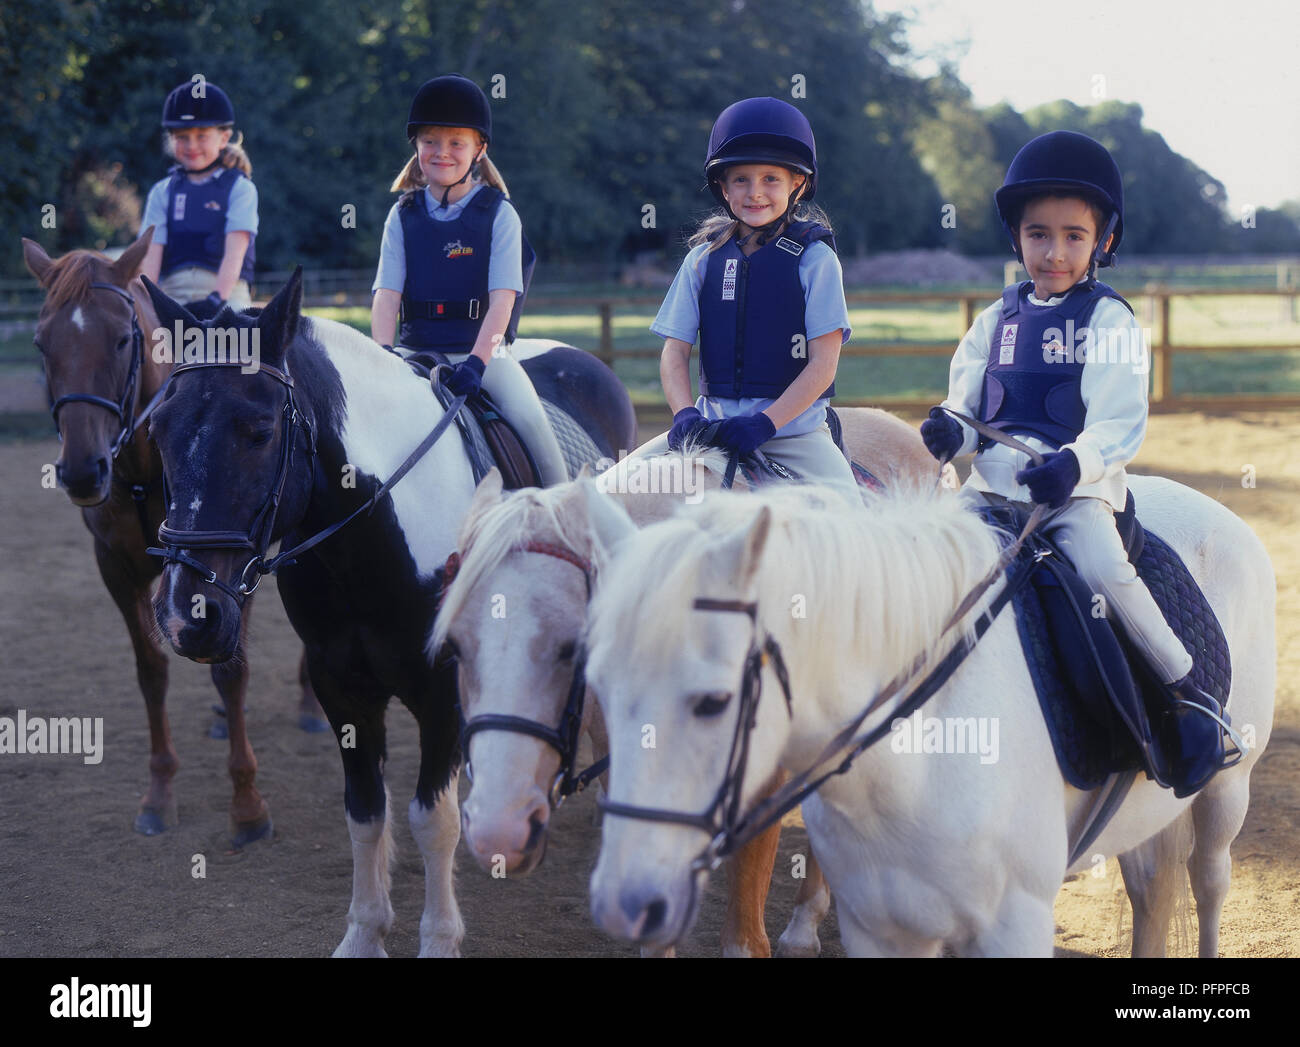 Drei junge Mädchen und junge sitzt auf Ponys in einer Reihe im Fahrerlager Stockfoto